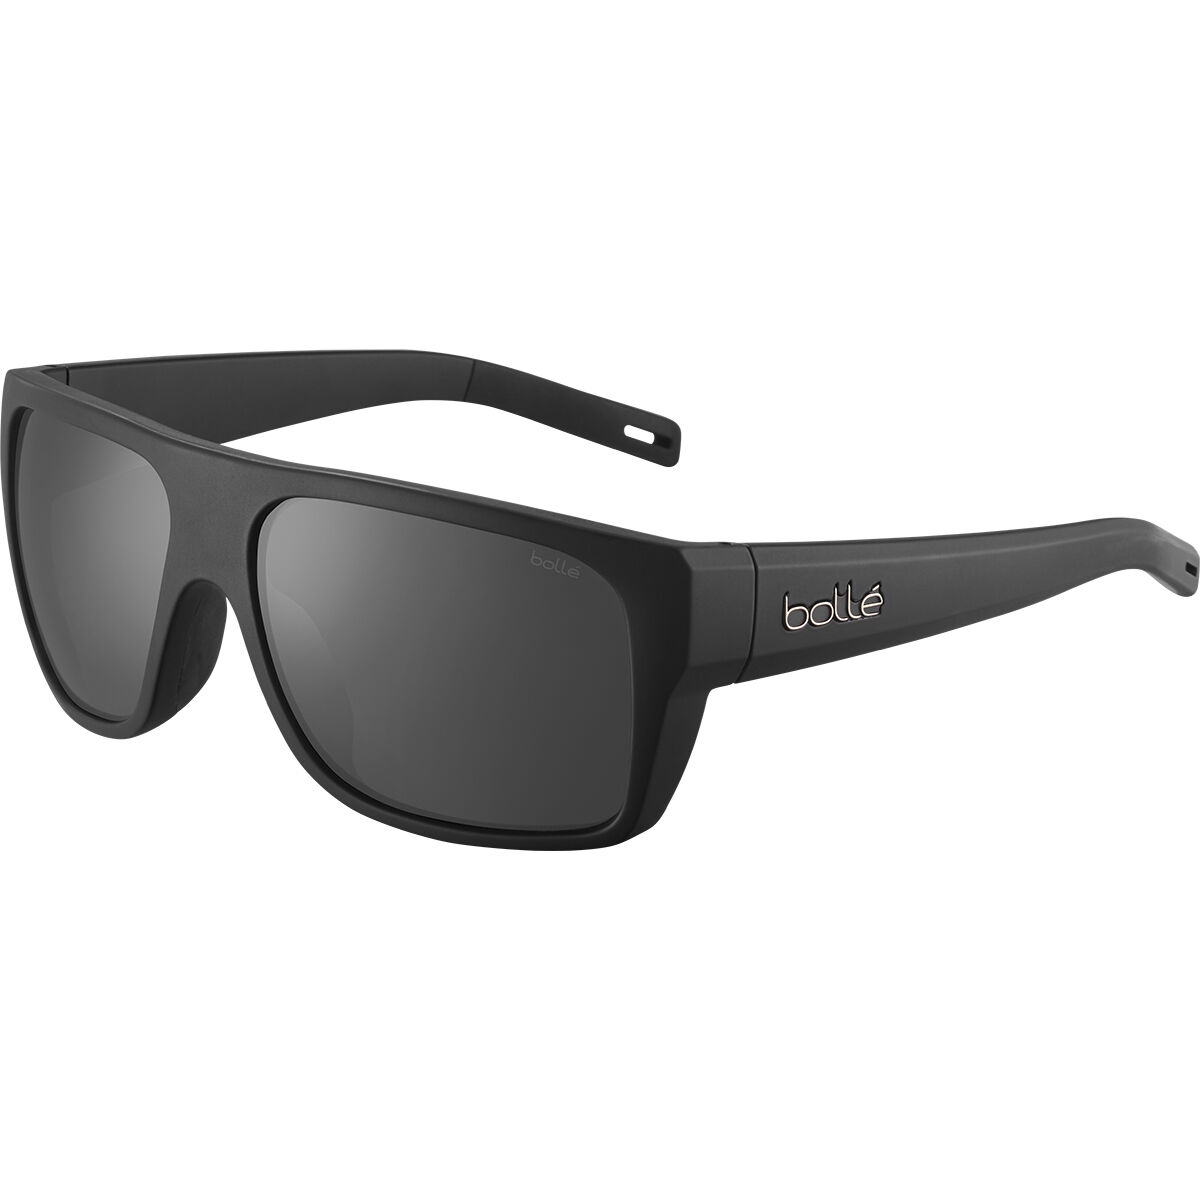 Bollé HOLMAN FLOATABLE Marine Sport Sunglasses - HD Polarized Lenses